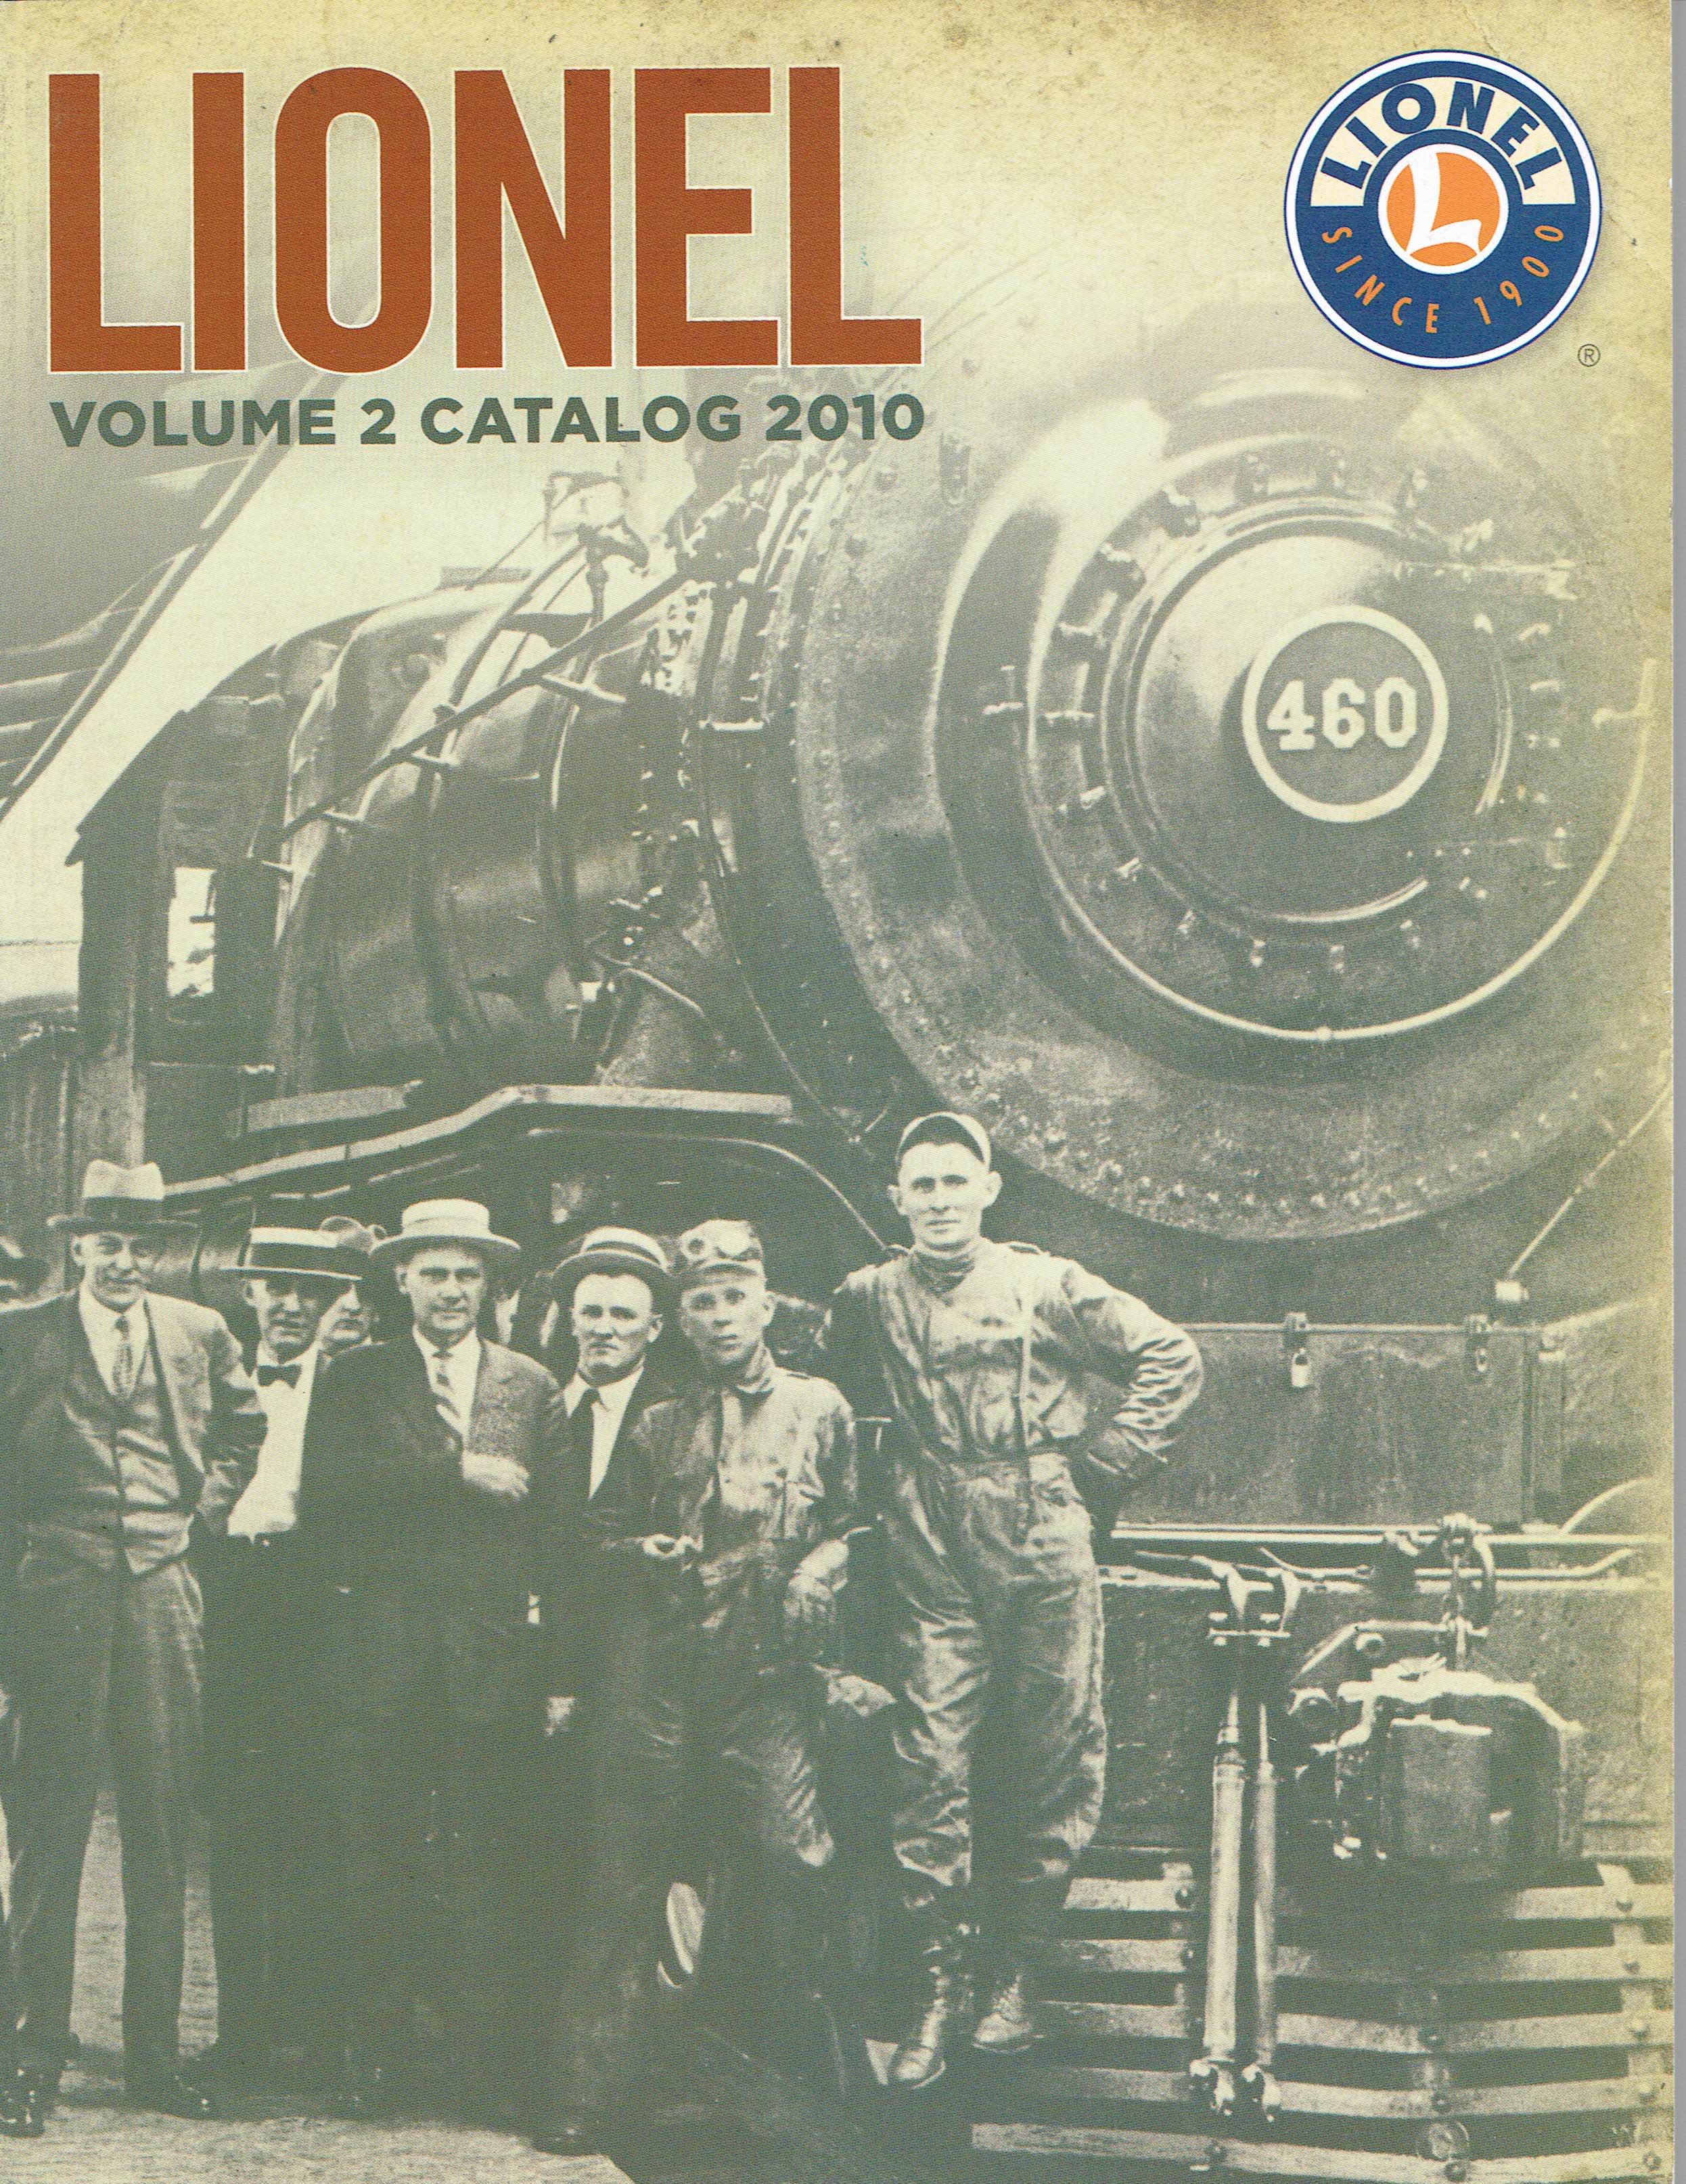 Lionel 2010 Volume 2 Catalog image